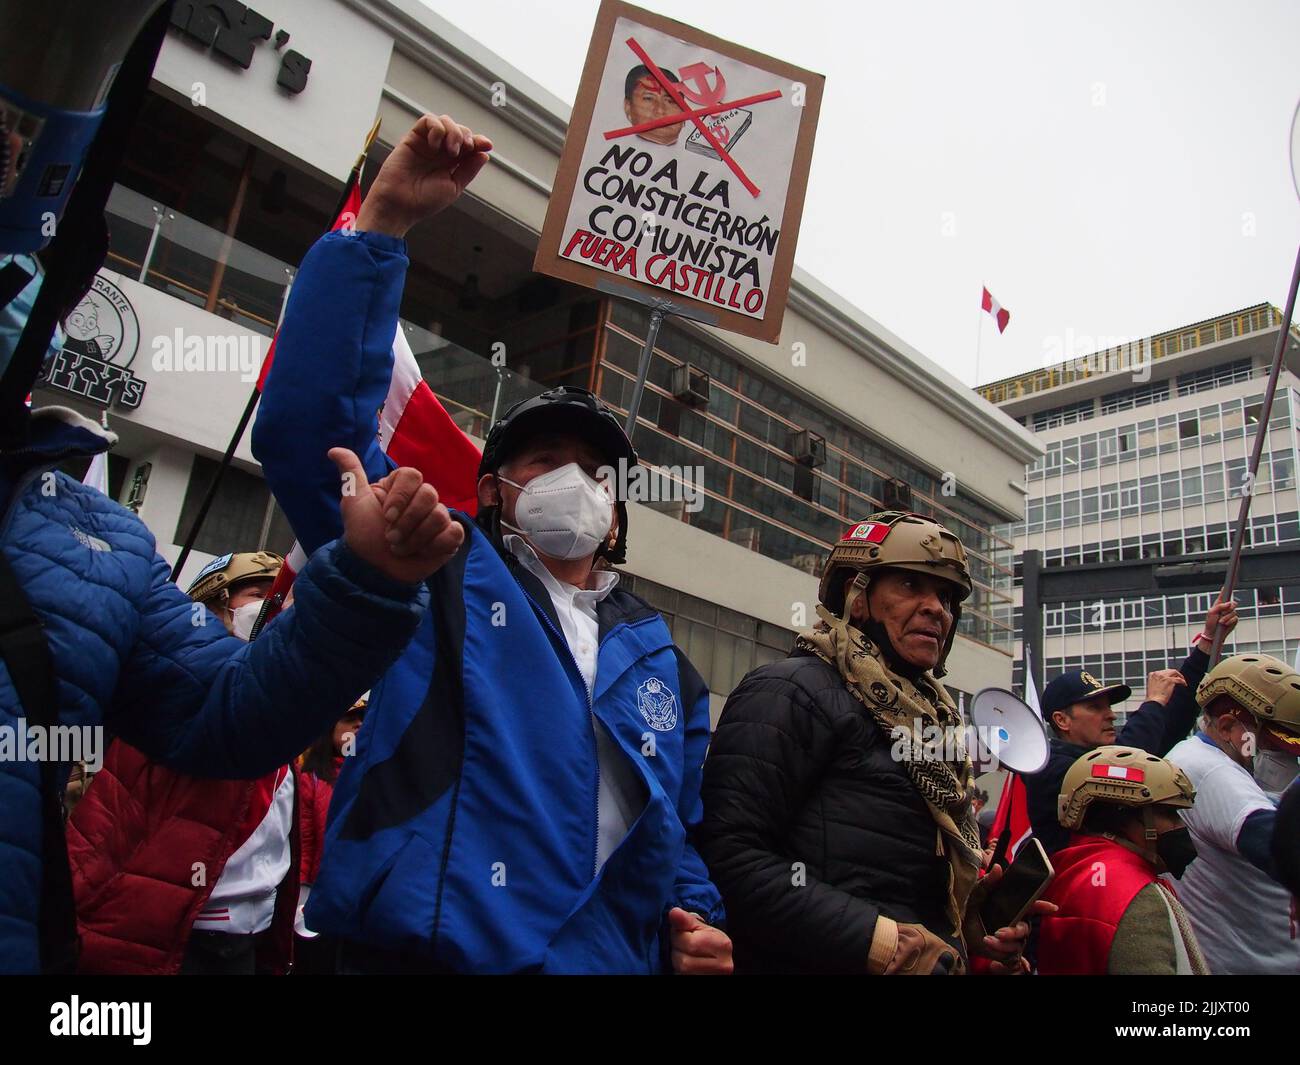 El día de la independencia de Perú, cientos de personas se reúnen en las calles para protestar contra el presidente Pedro Castillo, acusado de varios actos de corrupción después del primer año de su gobierno. Foto de stock